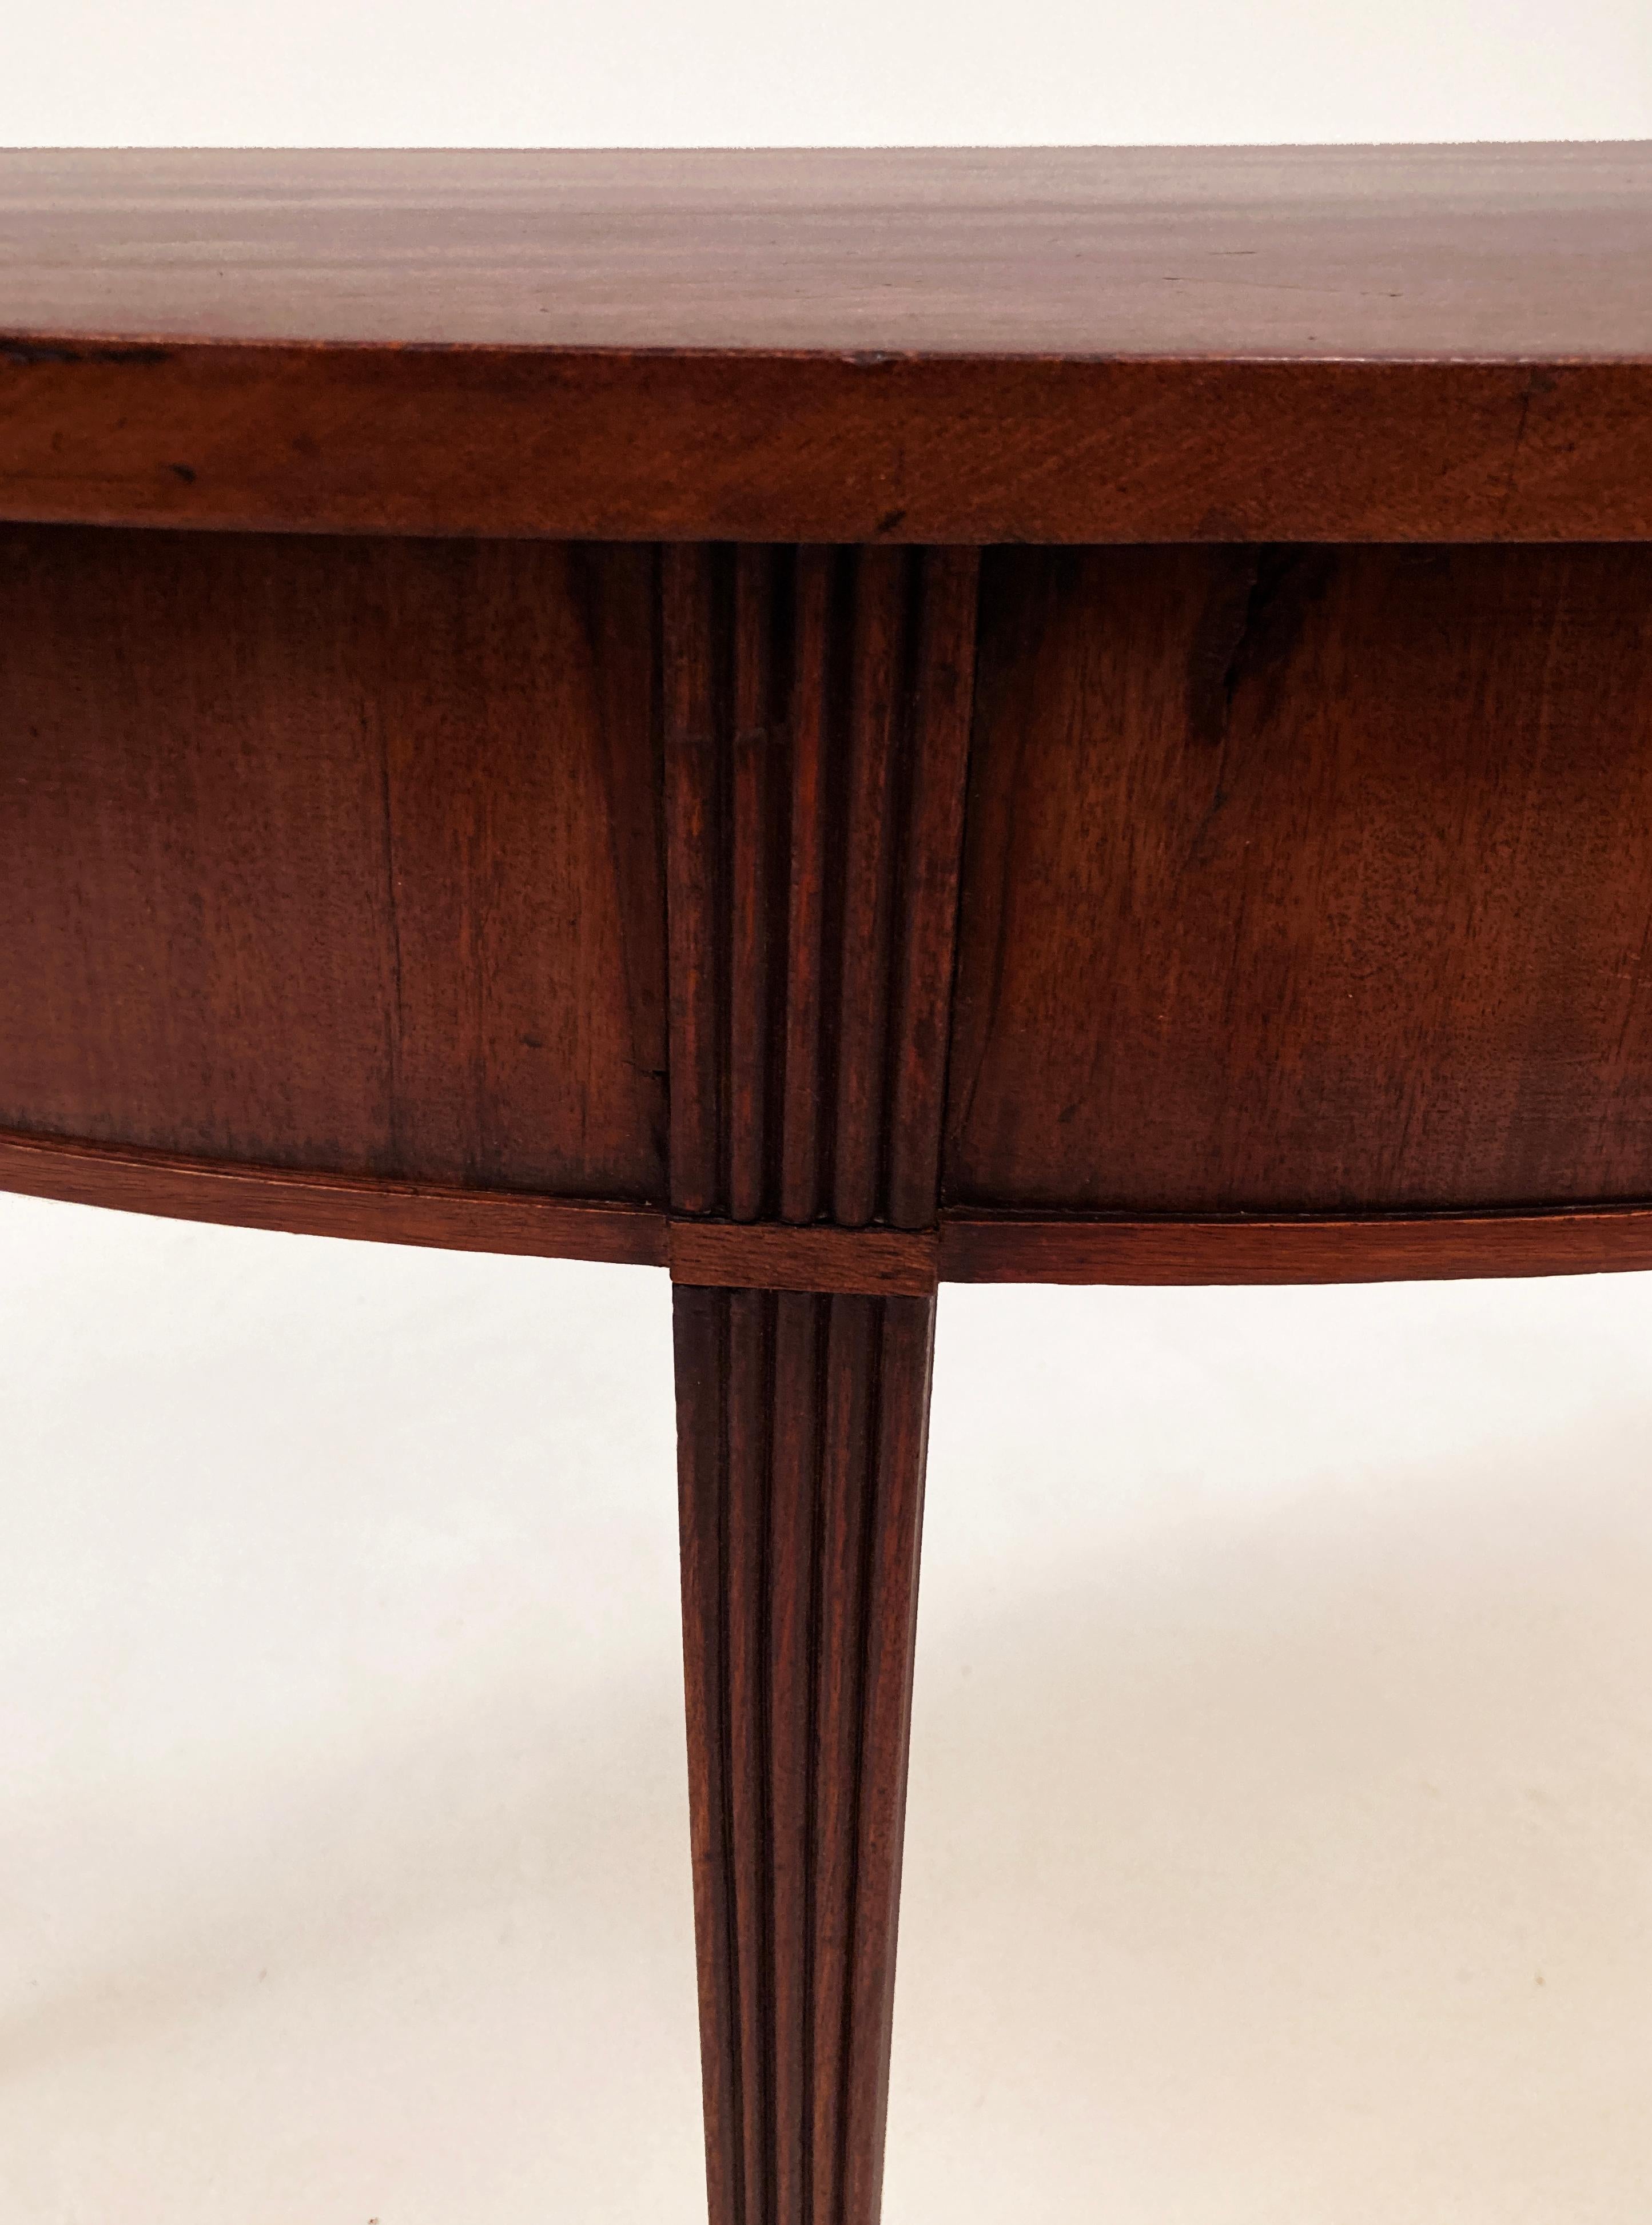 Dieser schöne englische Mahagoni-Demi-Lune-Tisch aus dem frühen 19. Jahrhundert stammt aus dem Besitz einer prominenten Südstaatenfamilie in Louisville, Kentucky. Man schätzt, dass dieser Tisch in den frühen 1800er Jahren gebaut wurde. Die schön